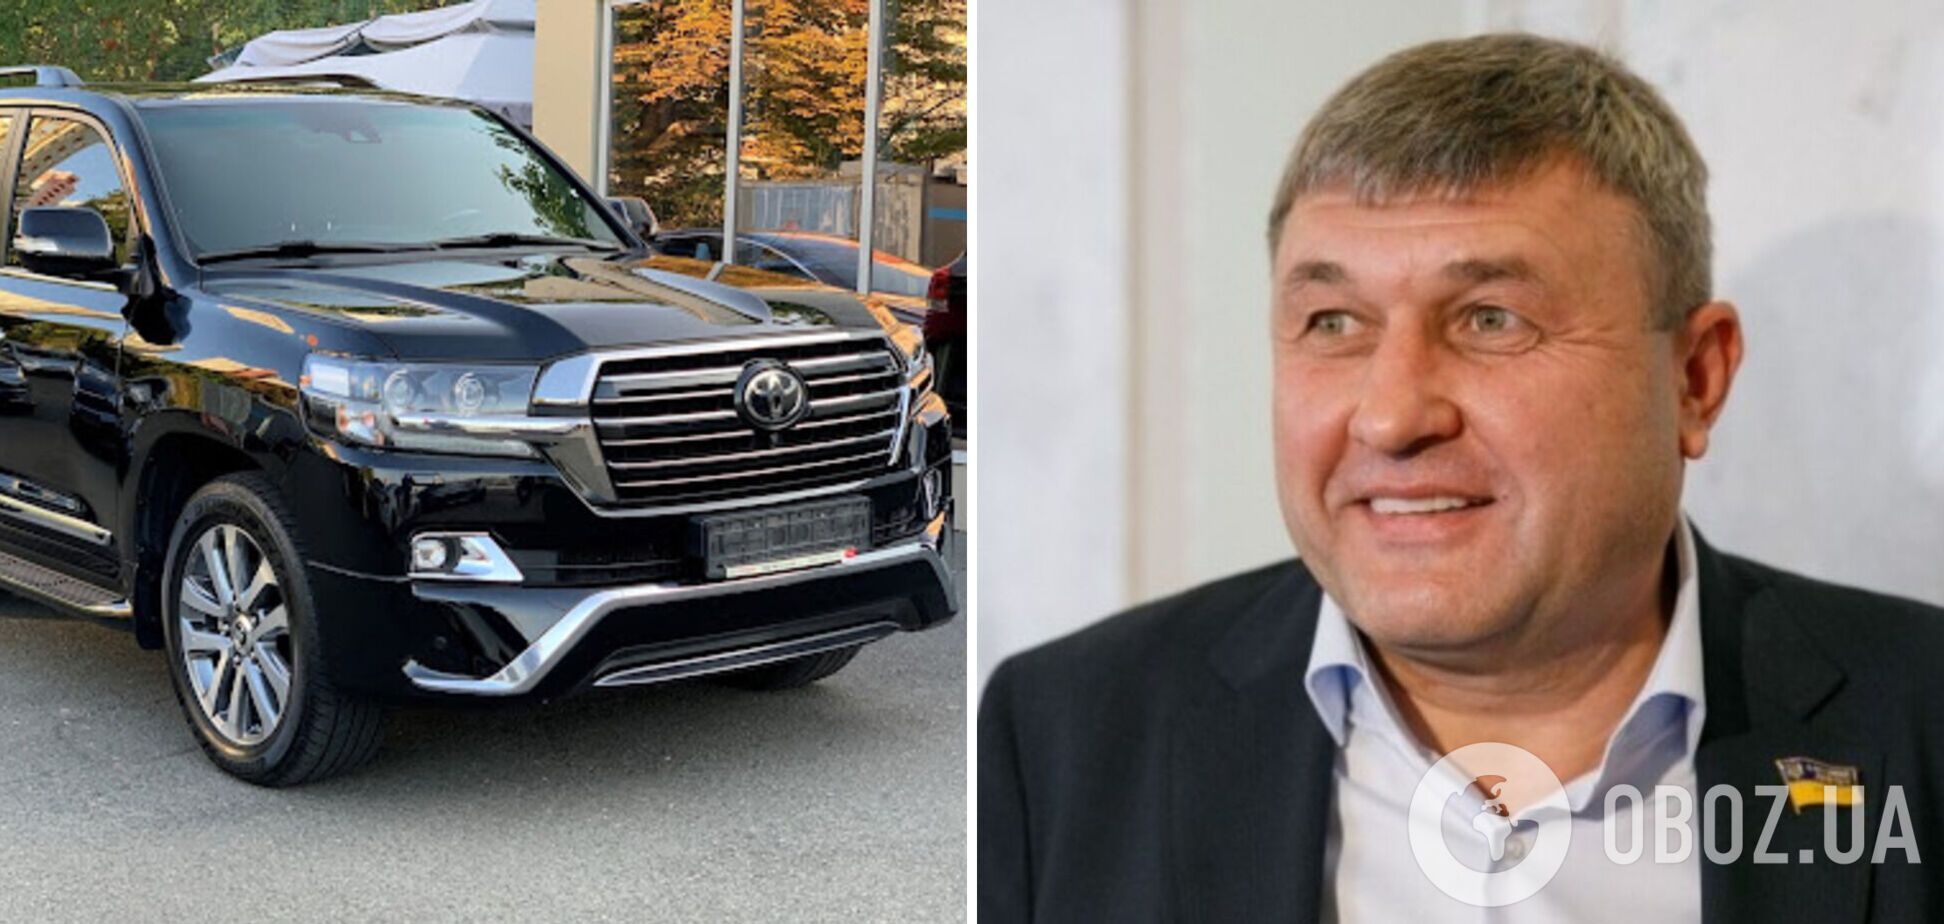 Нардеп Литвиненко ездит на авто помощника за $70 тыс.: тот объяснил покупку доходами от пчеловодства